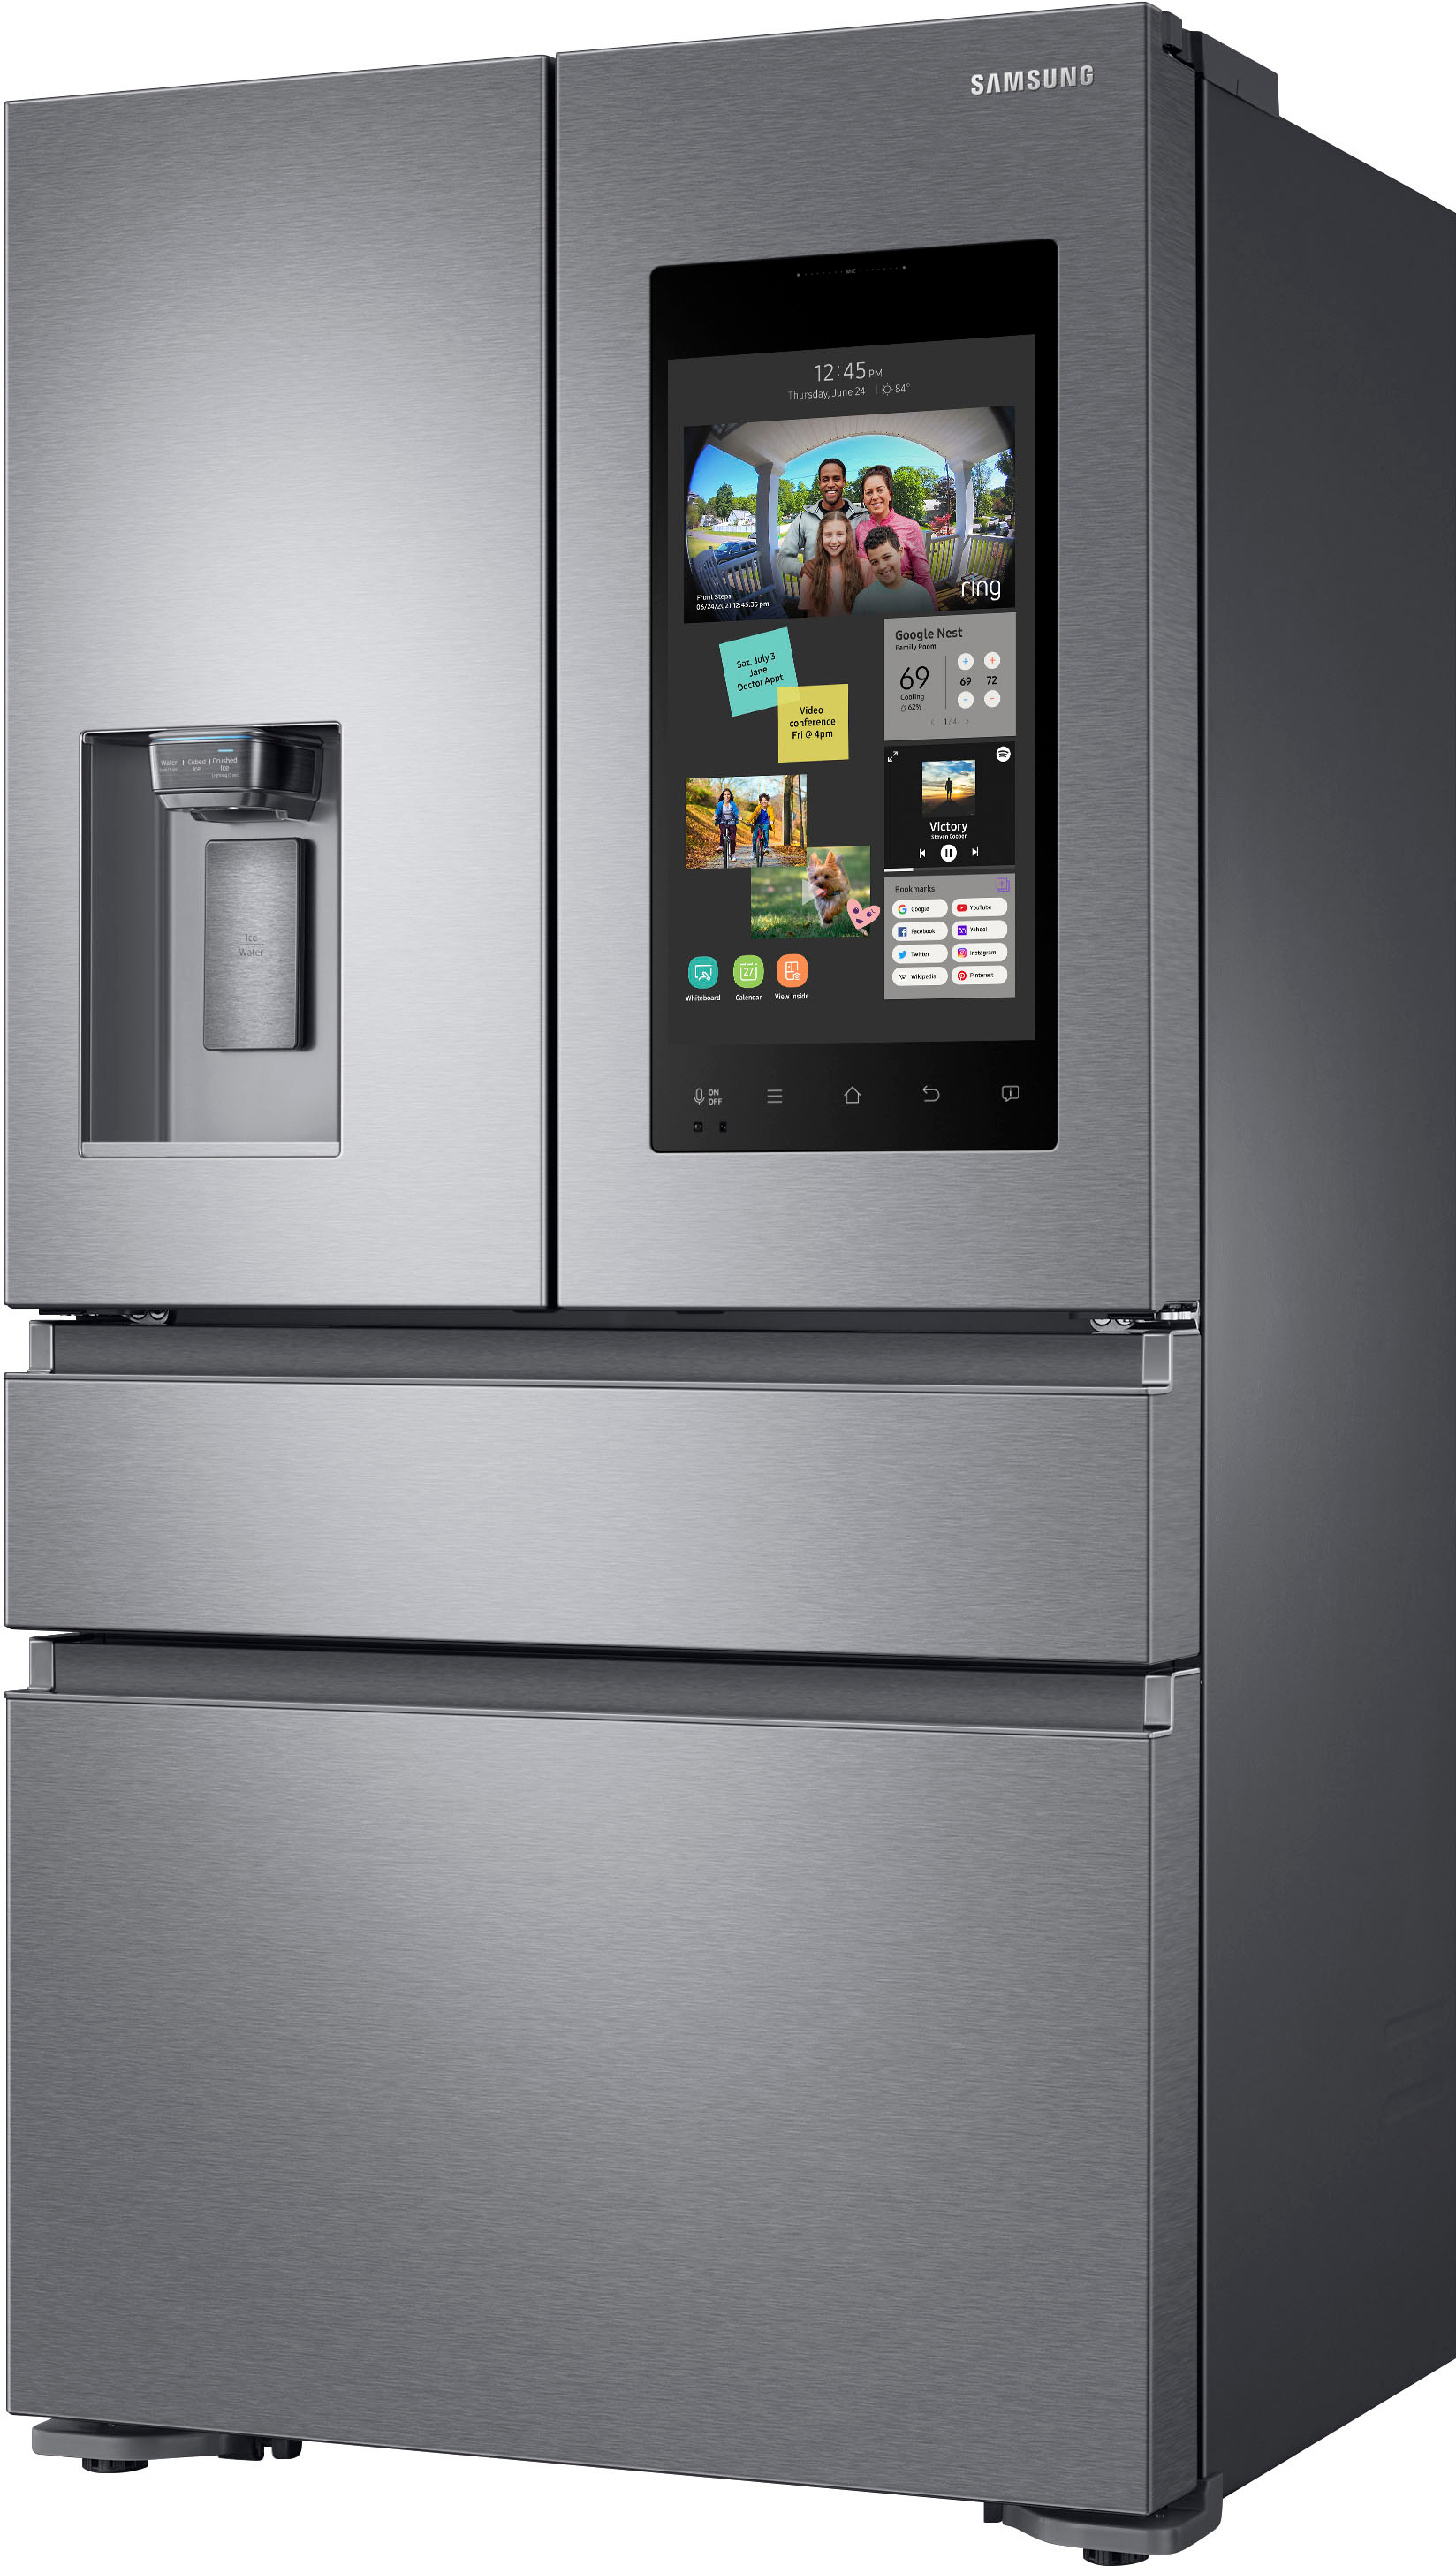 Left View: Samsung - Family Hub 22.2 Cu. Ft. Counter Depth 4-Door French Door Fingerprint Resistant Refrigerator - Stainless steel